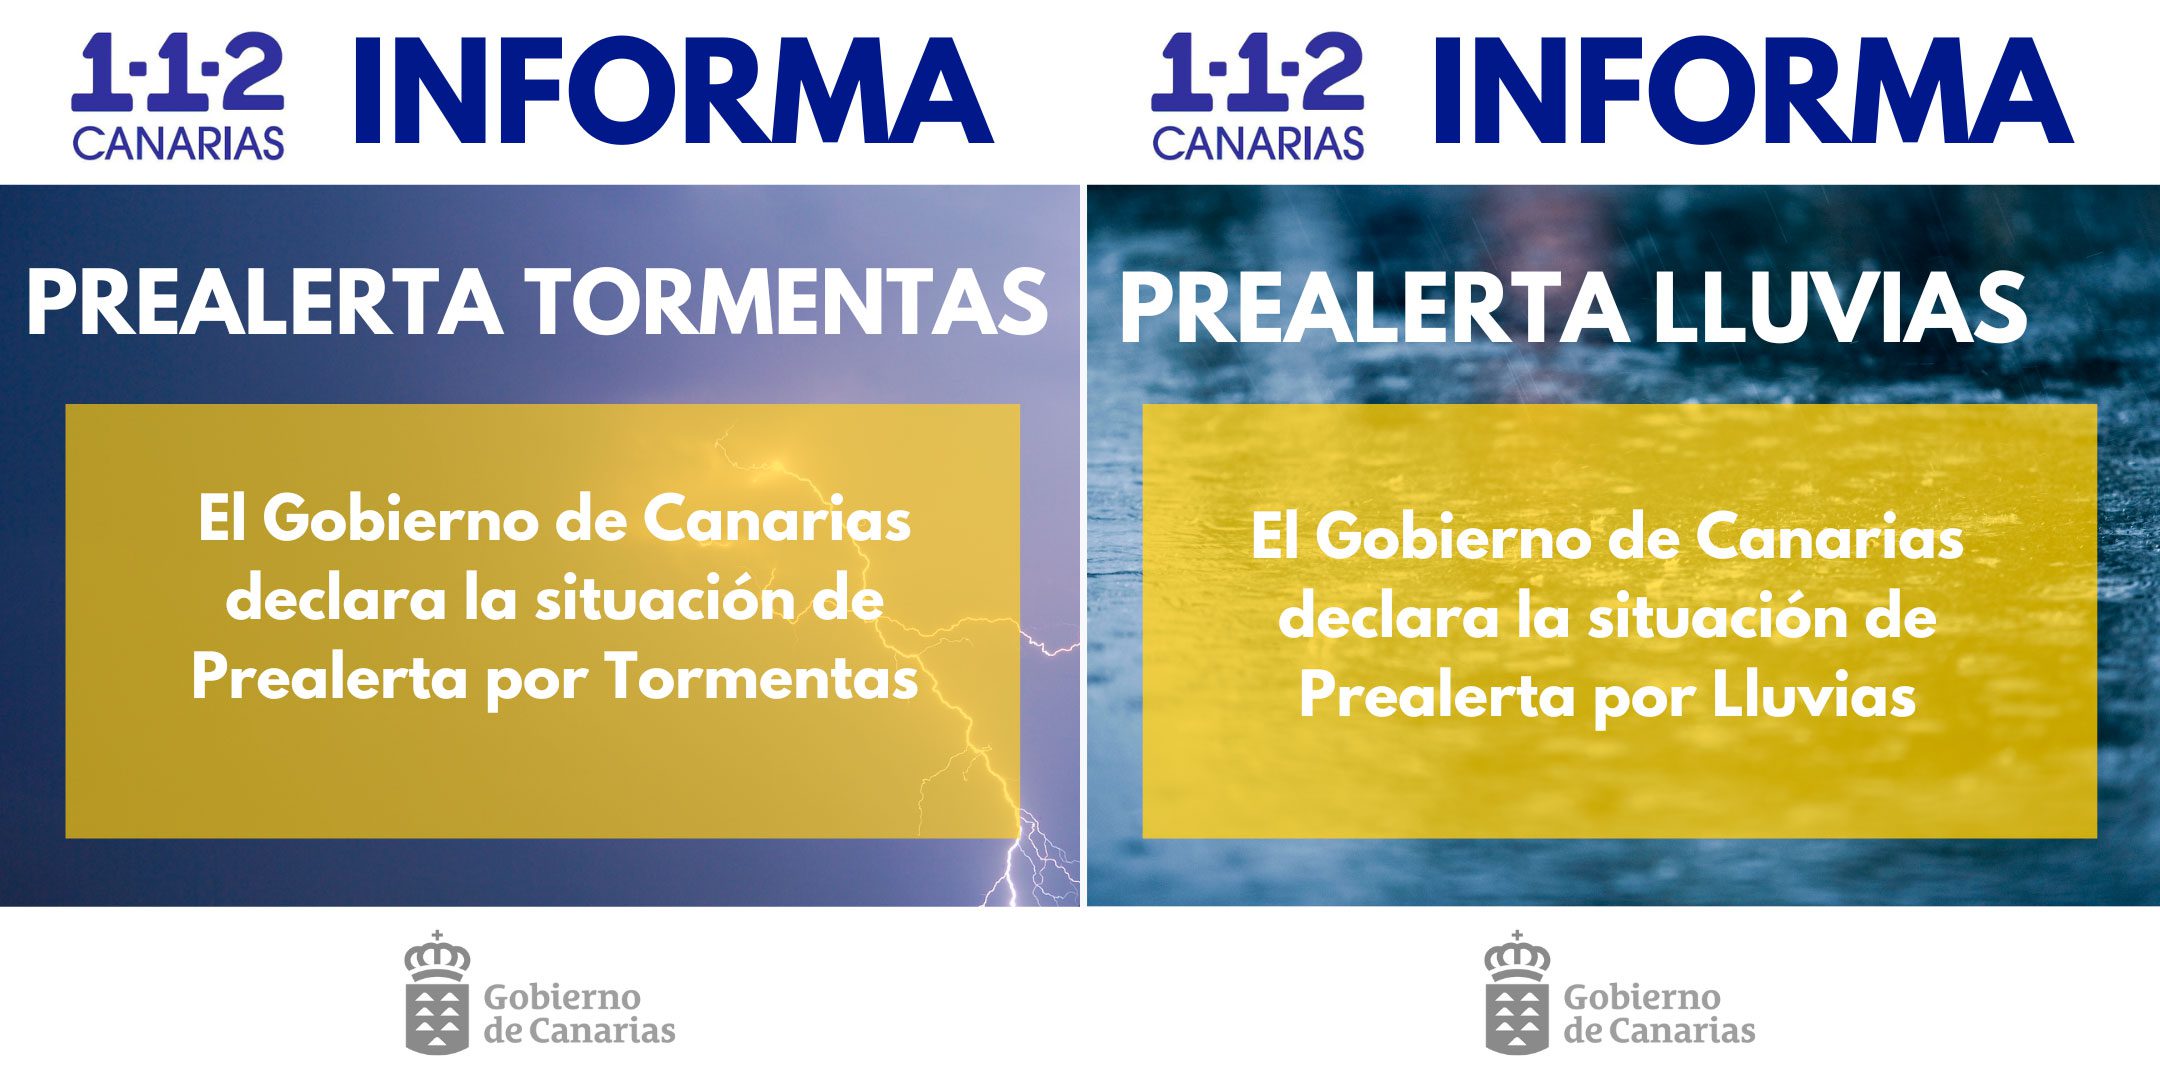 El Gobierno declara la situación de prealerta por lluvias y tormentas en toda Canarias